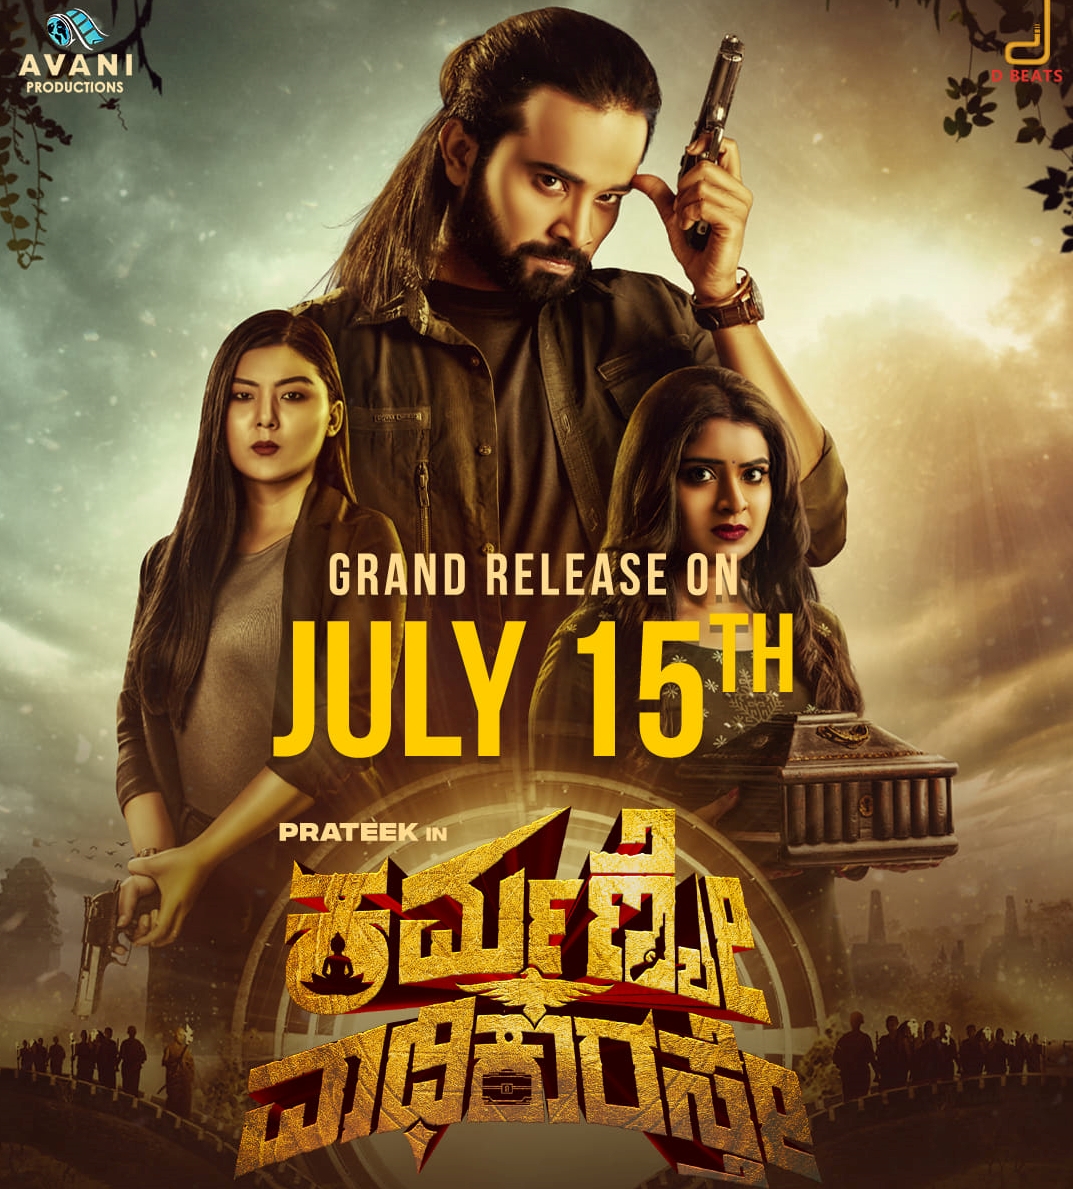 Karmanye Vadhikarasthe cinema poster